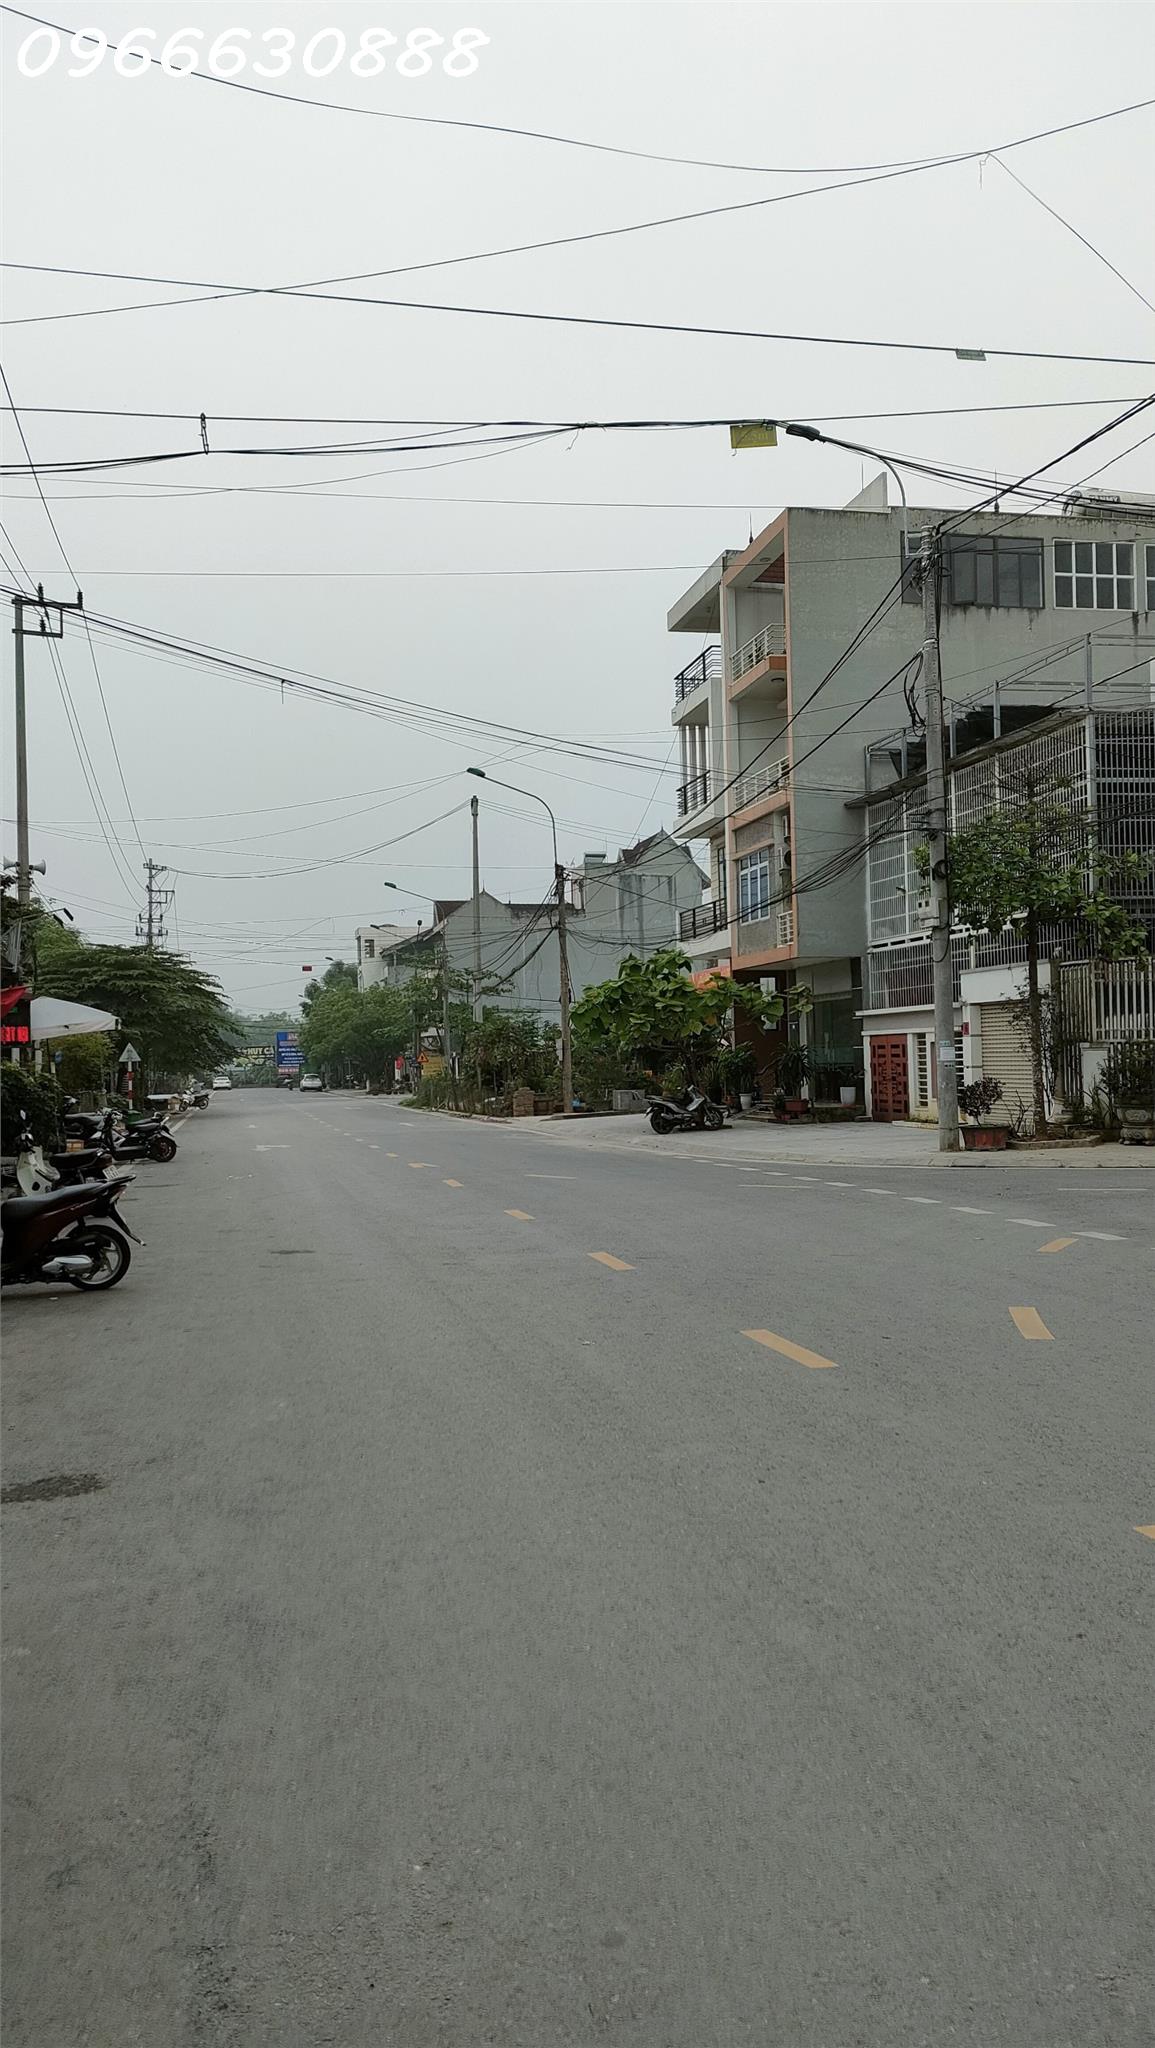 Sở hữu ngôi nhà 2 tầng  tại vị trí đắc địa - Phường Phan Thiết TP Tuyên Quang - Ảnh 3